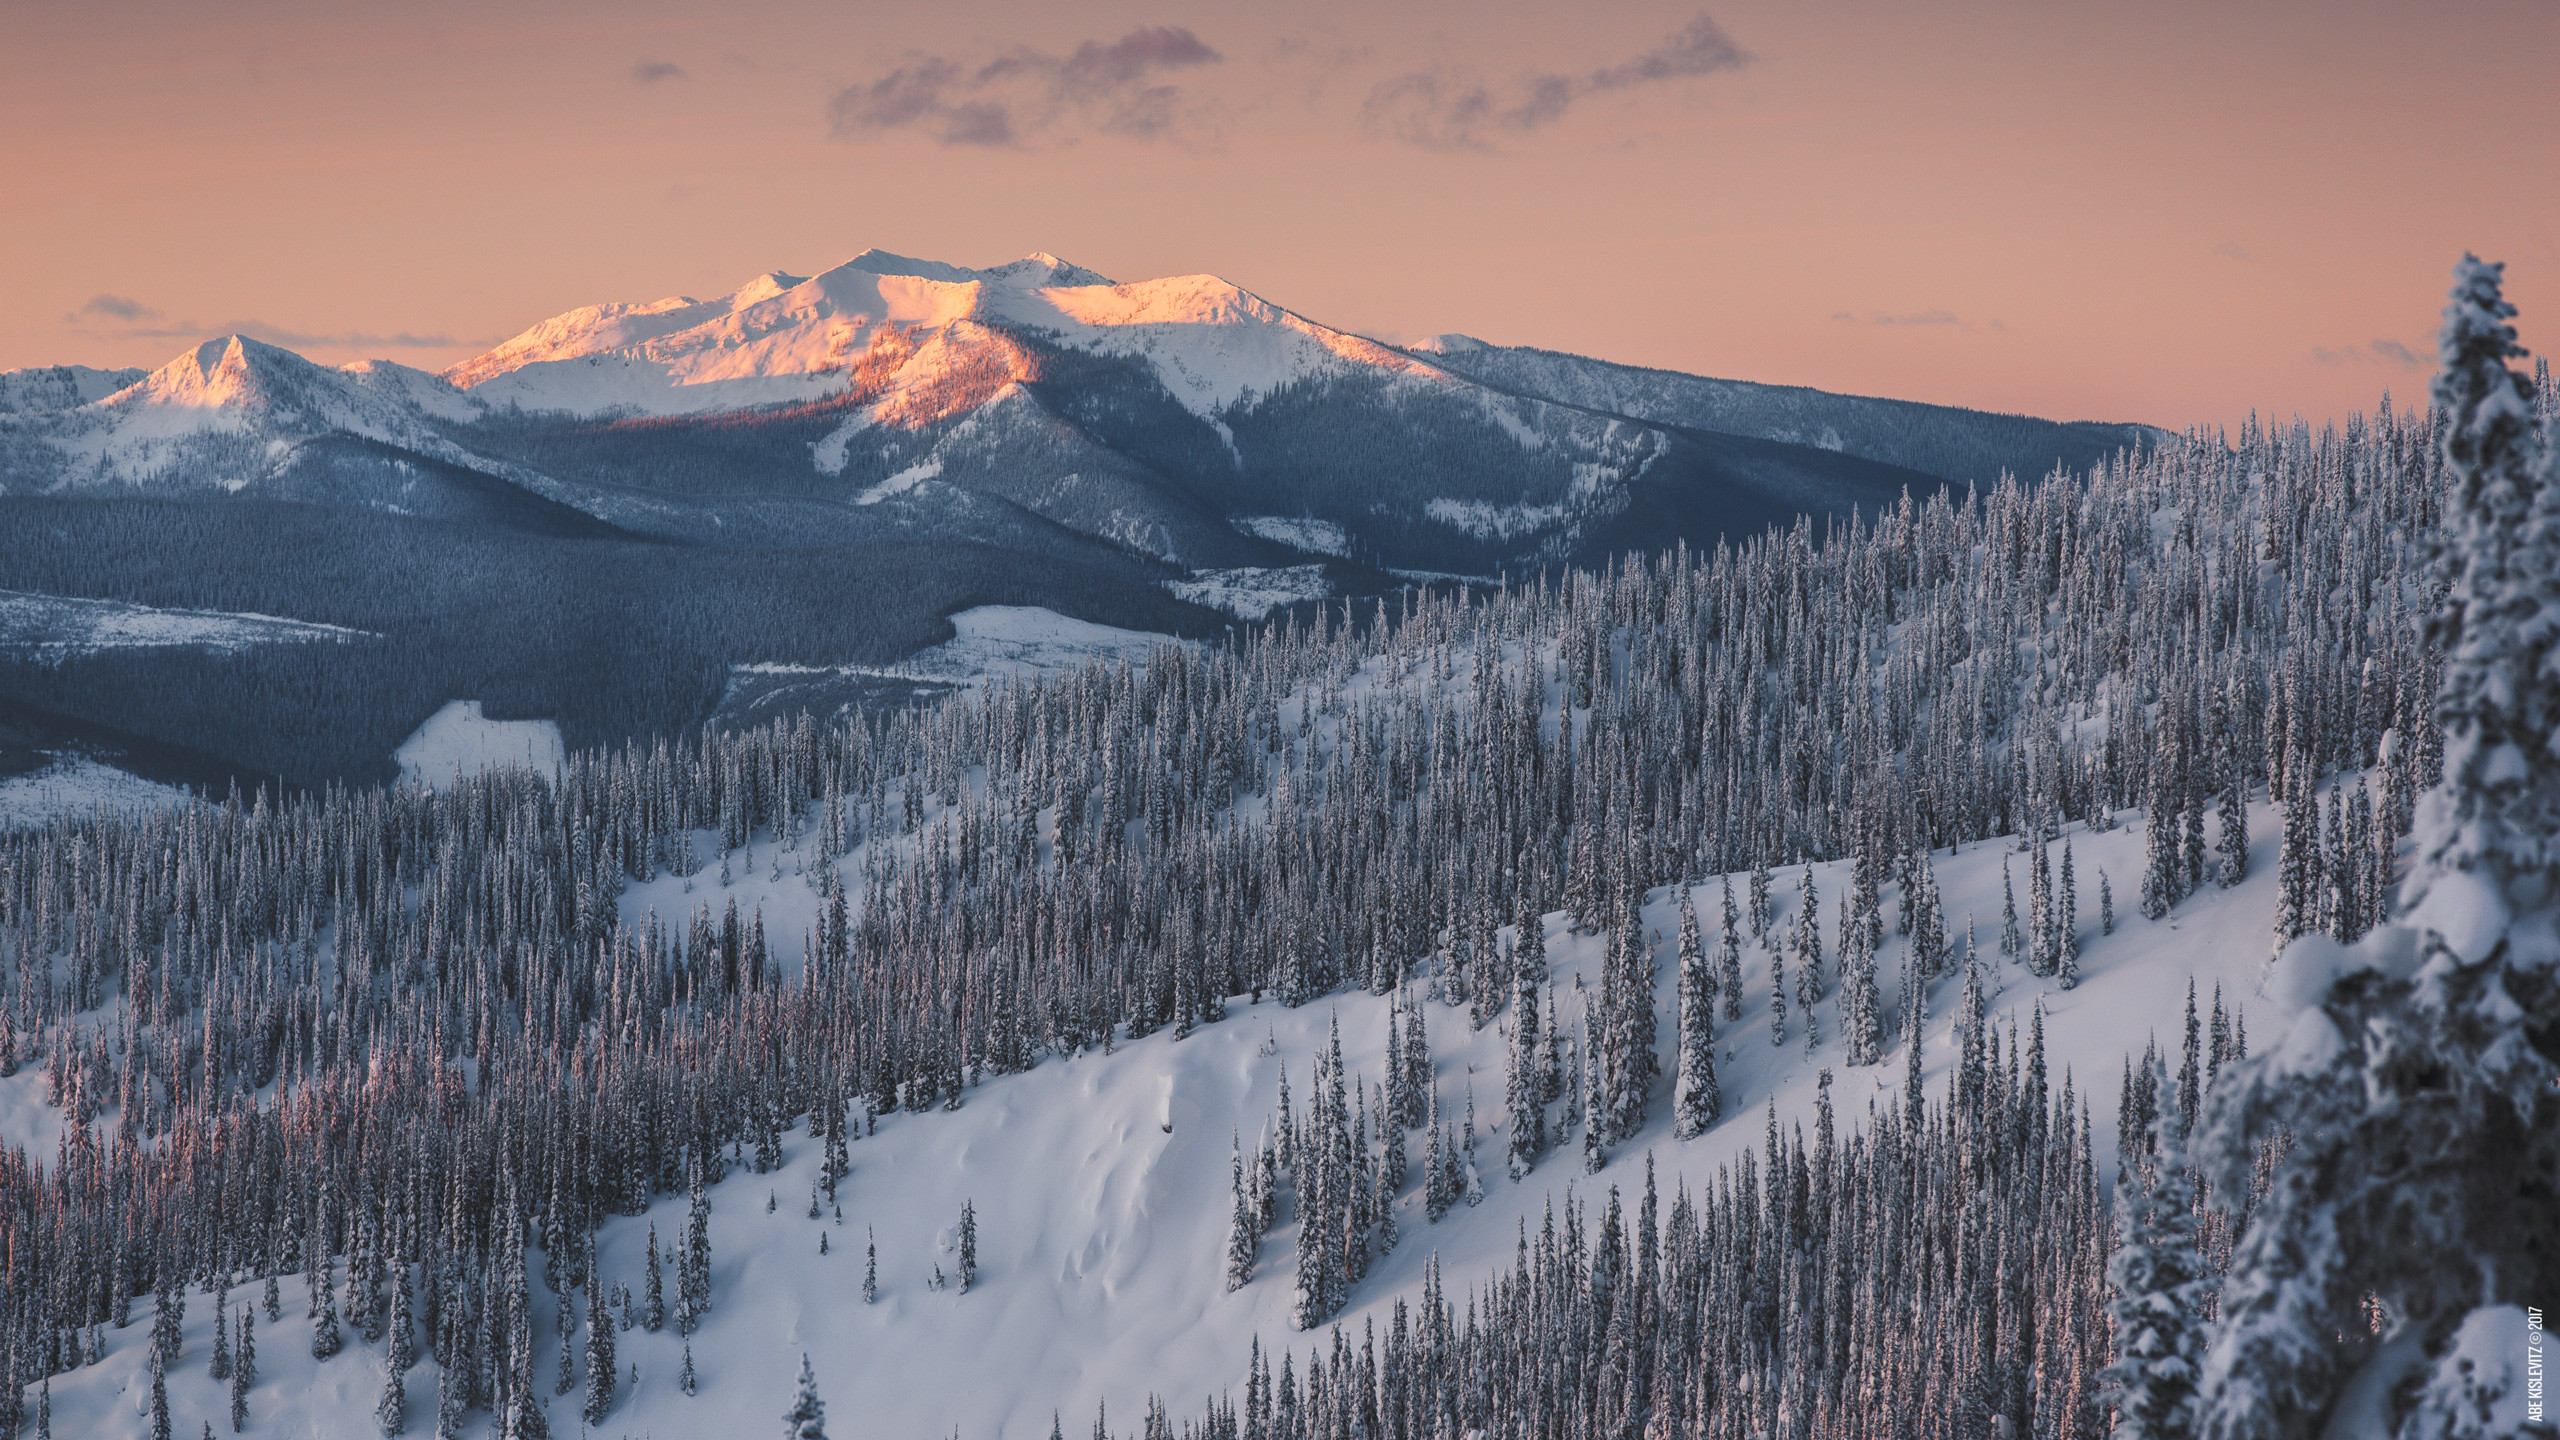 4k fonds d'écran pour macbook pro retina,montagne,la nature,neige,hiver,ciel